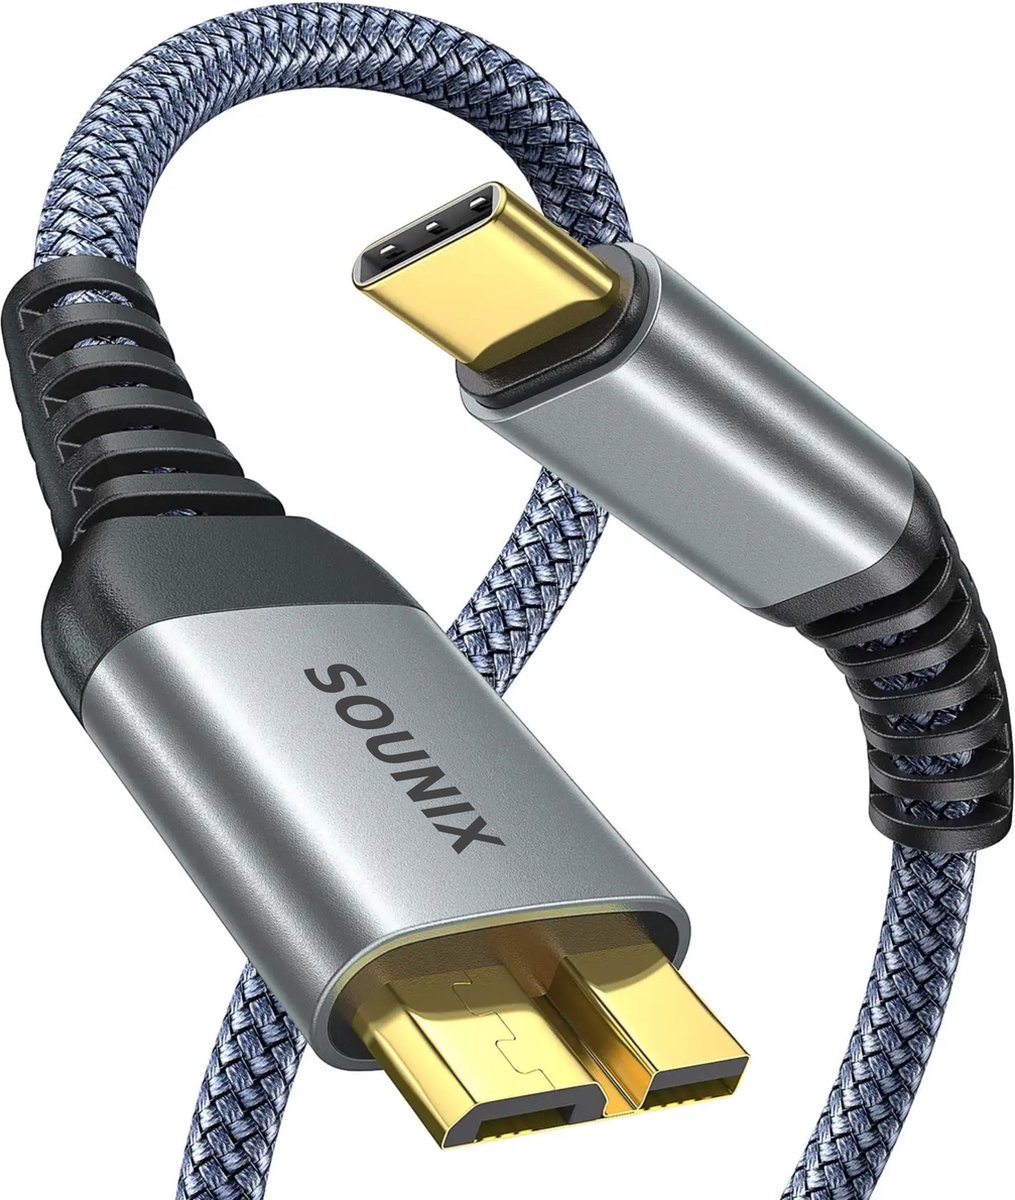 Câble micro USB 3.0 USB A mâle vers micro B pour disque dur externe avec  appareil photo, disque dur et plus encore (50 cm)